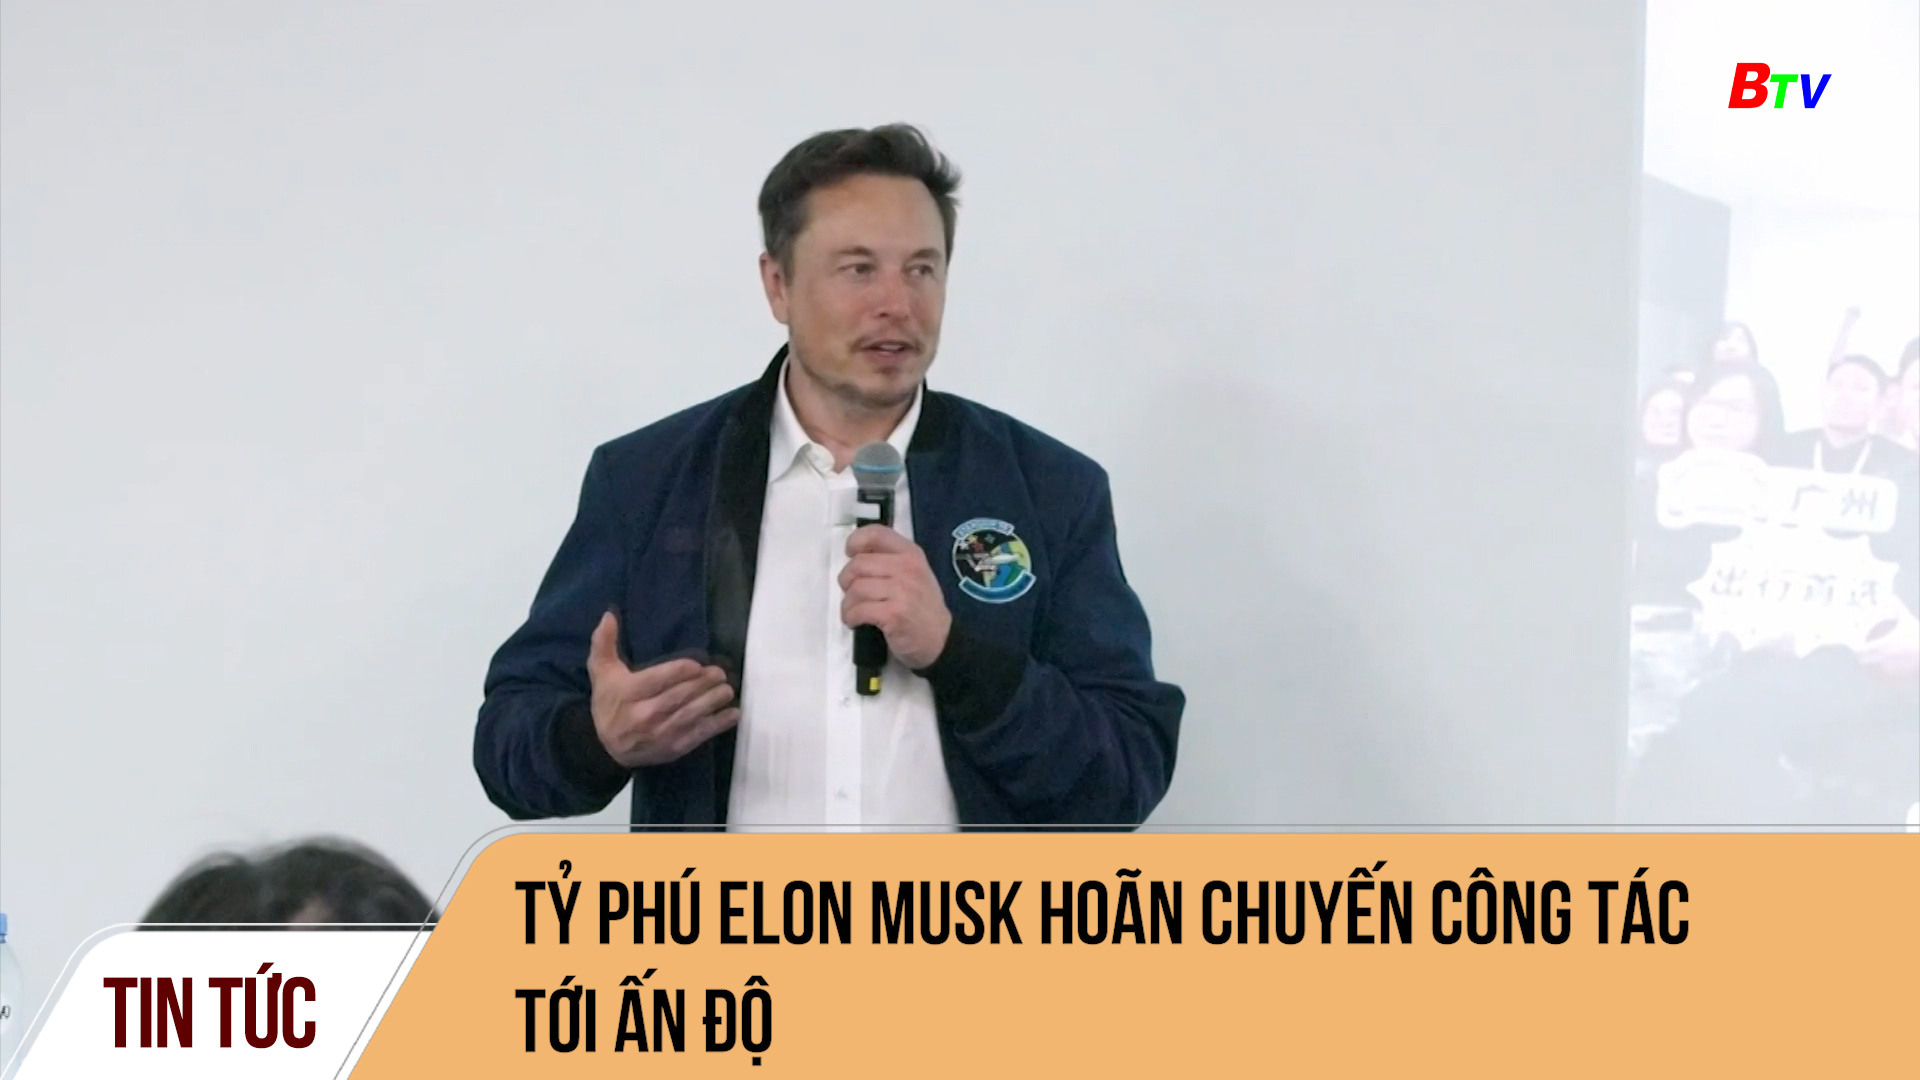 Tỷ phú Elon Musk hoãn chuyến công tác tới Ấn Độ